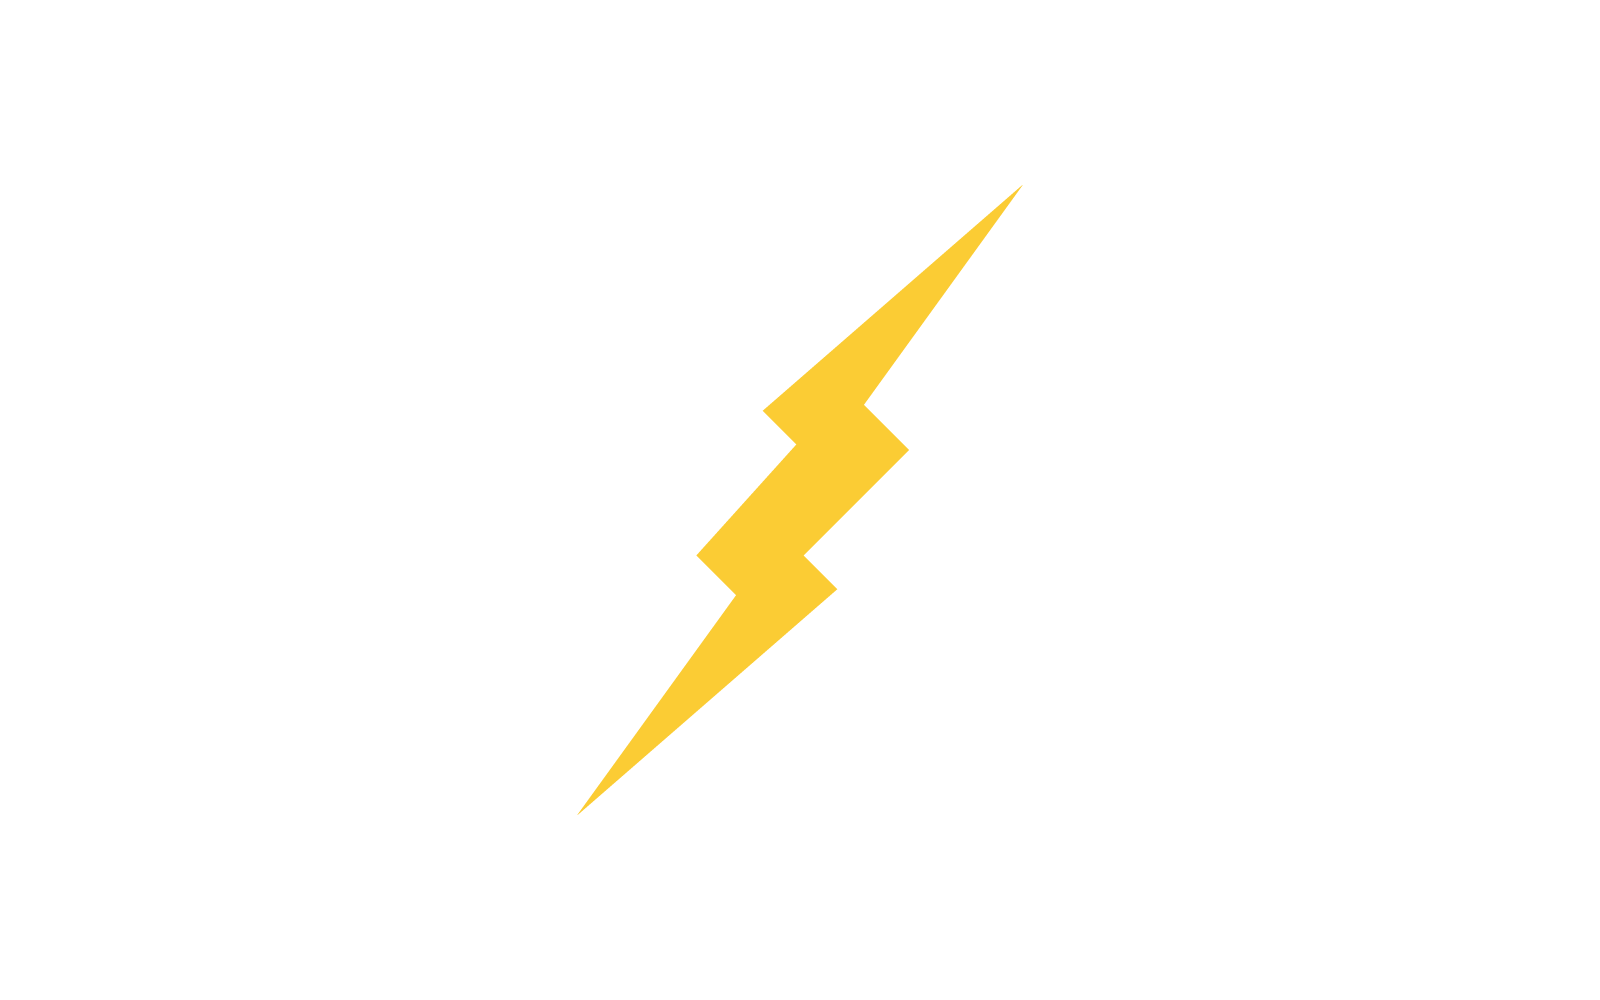 Power lightning power energy flat design logo template